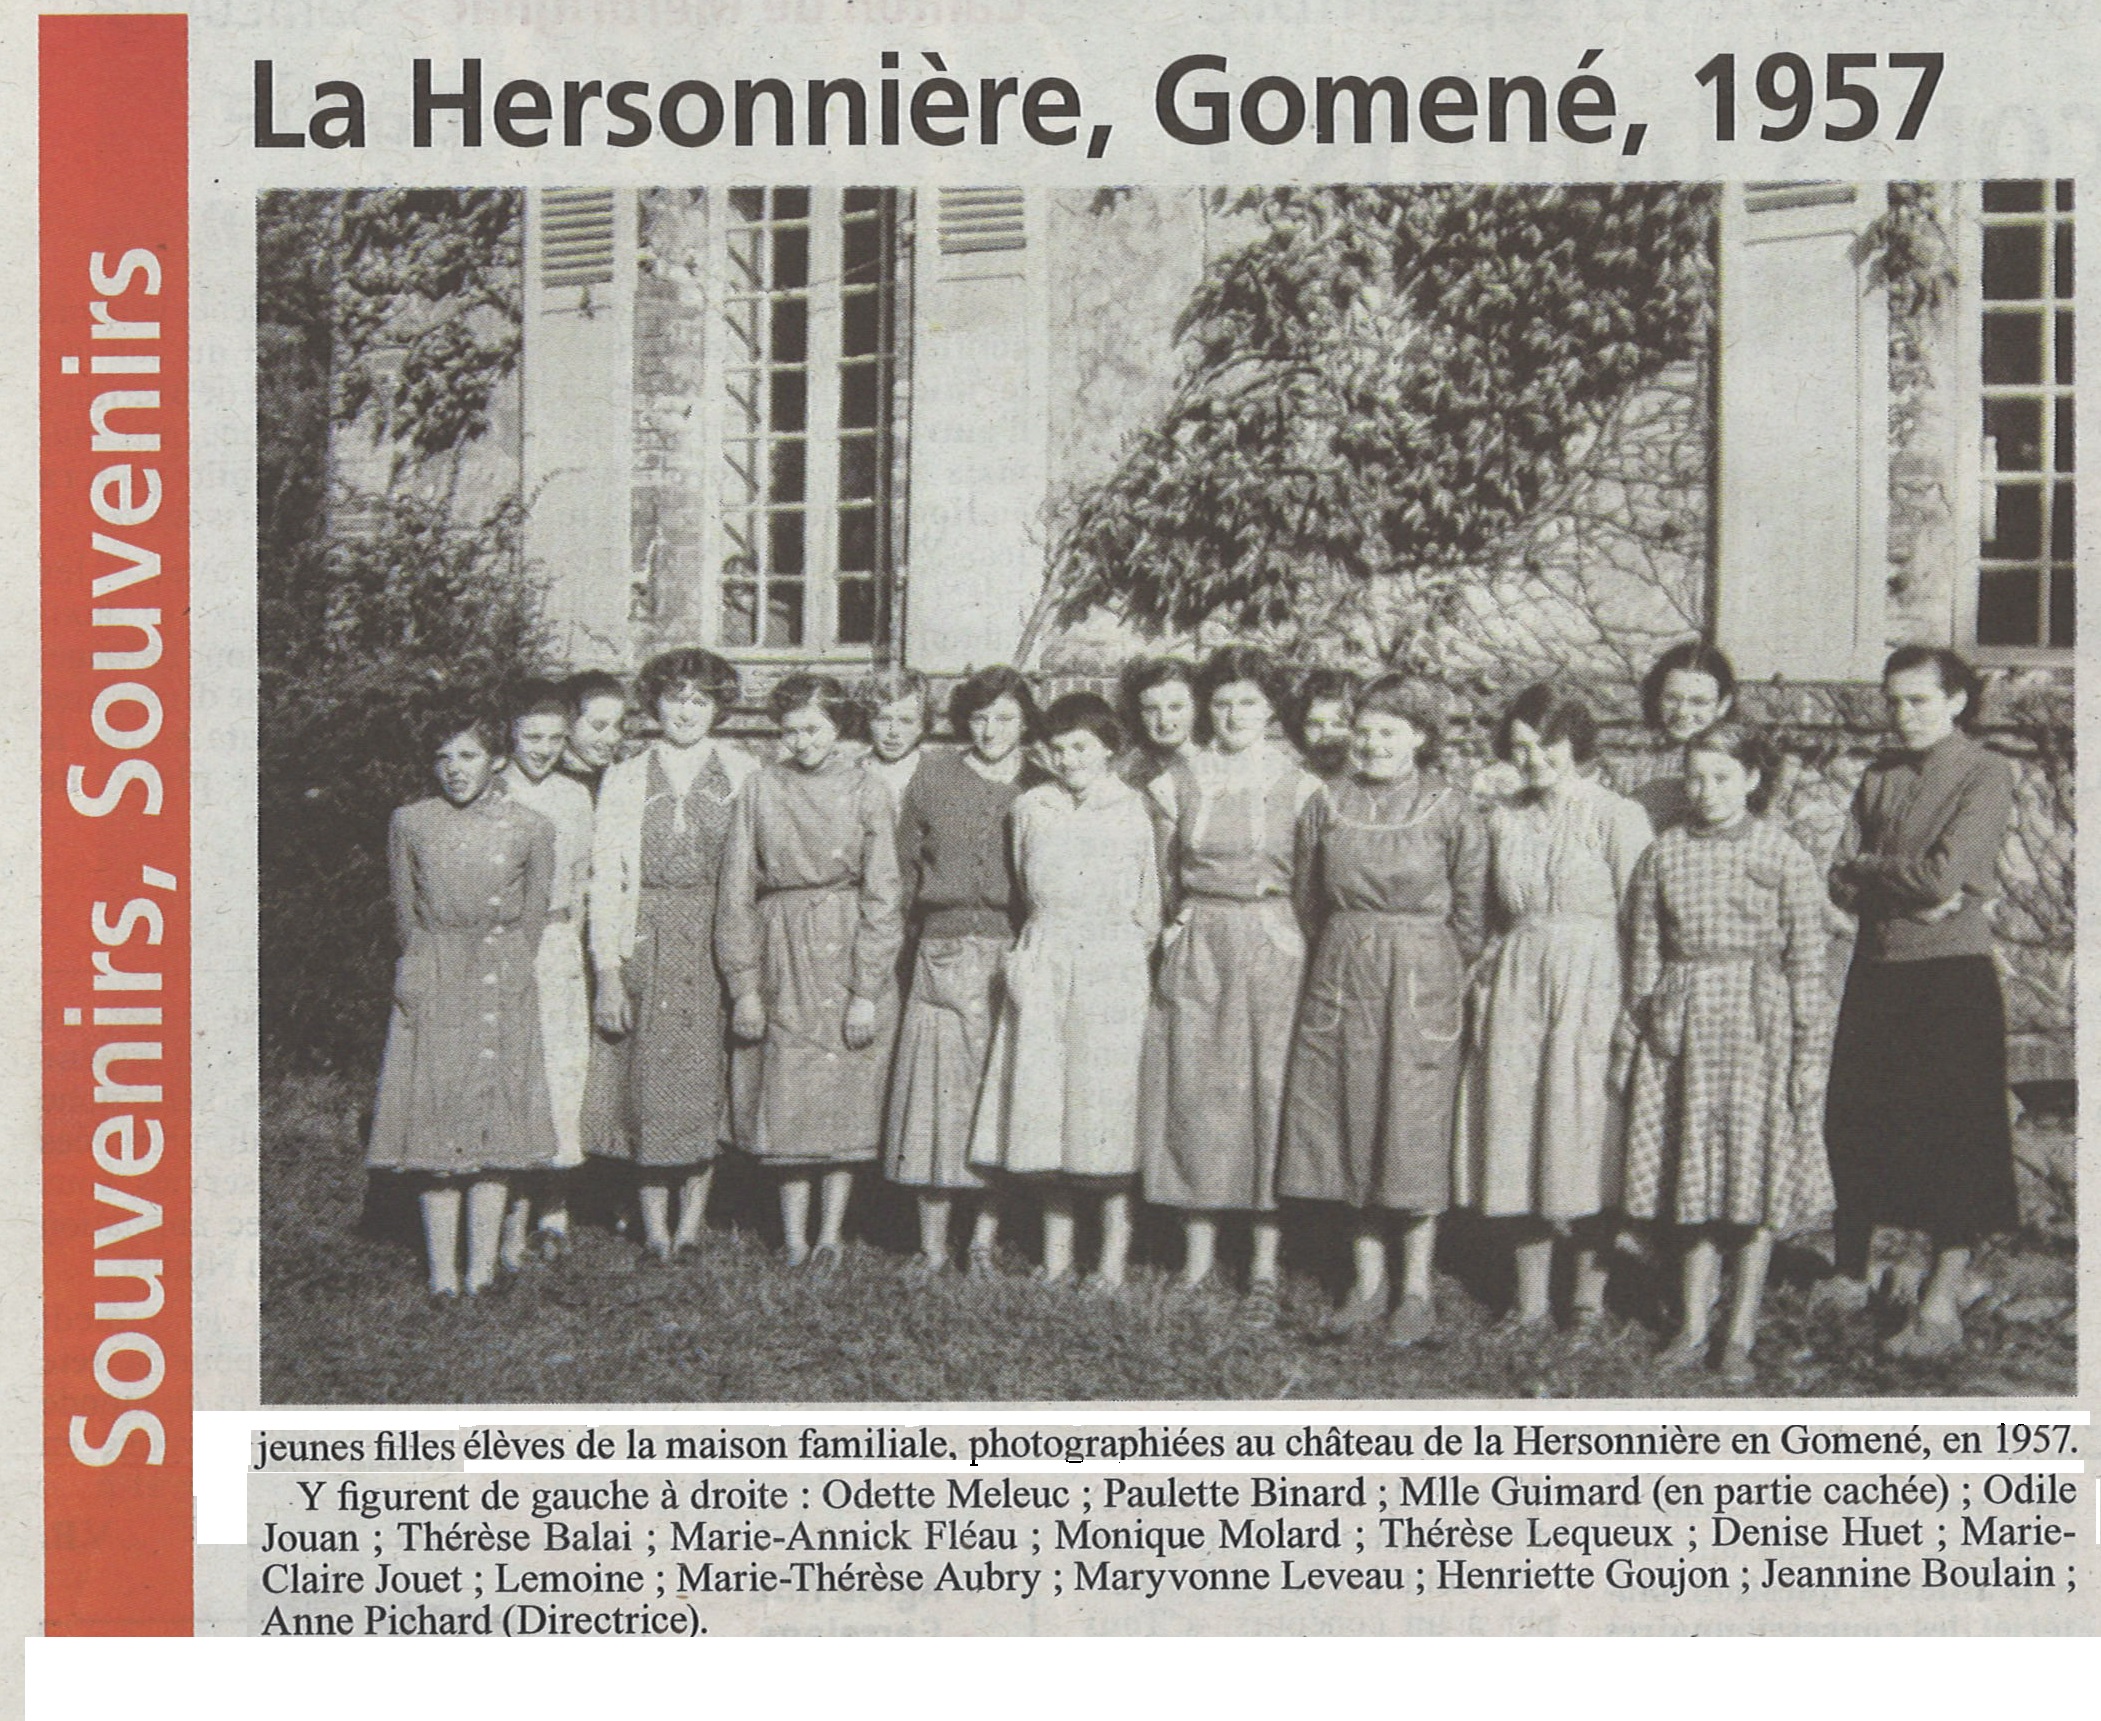 Jeunes filles château Hersonnière 1957